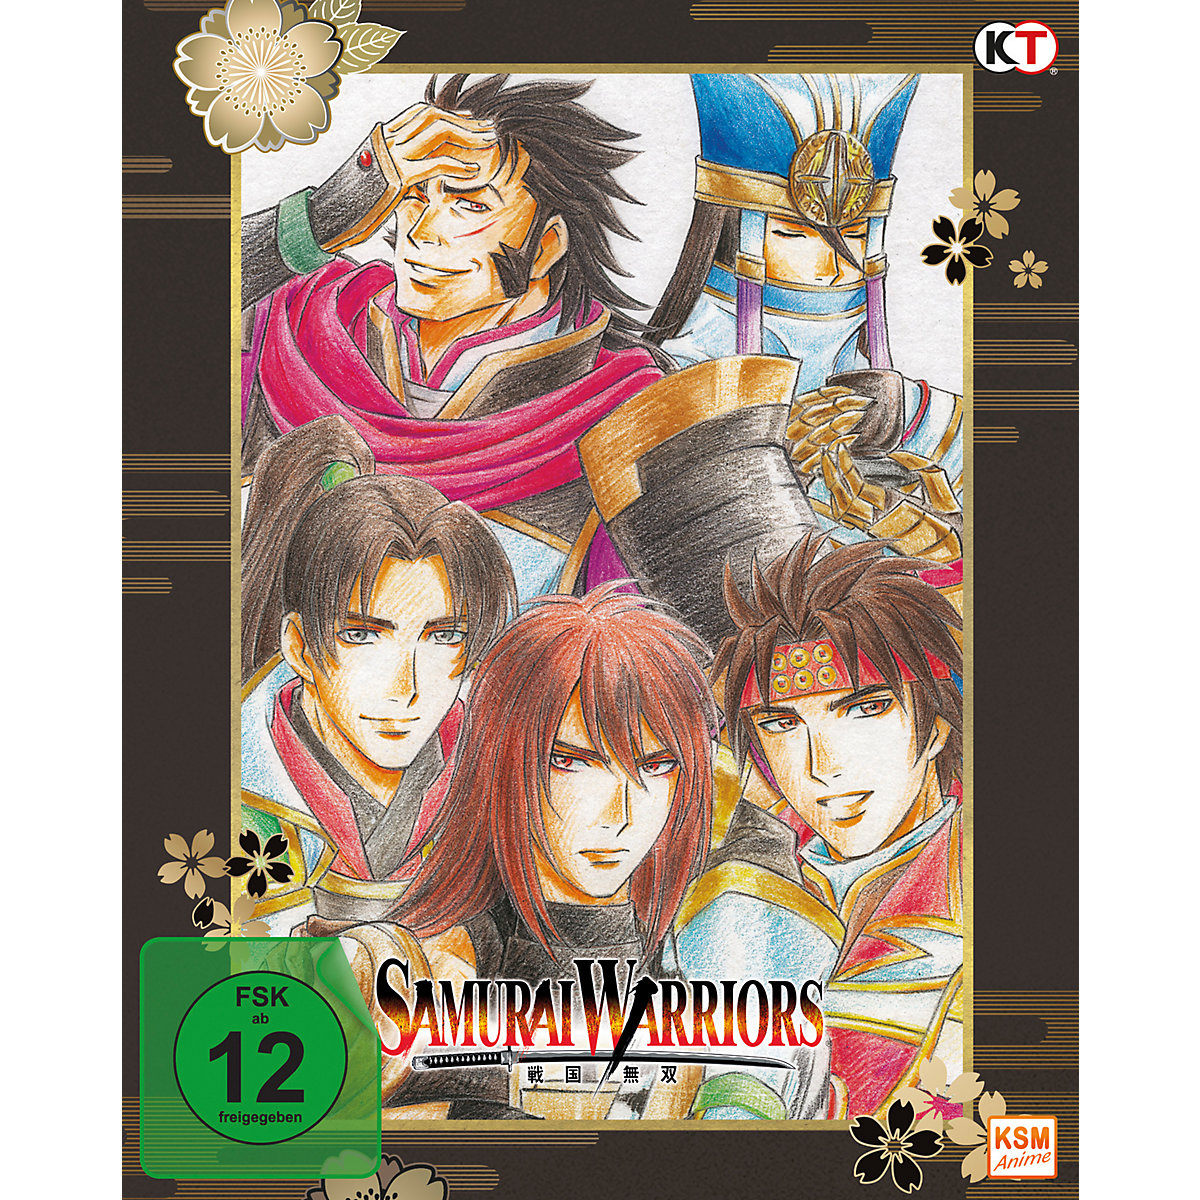 Samurai Warriors Ep.1-12 + Movie Sp.: Die Legende von Sanada -3 BRs